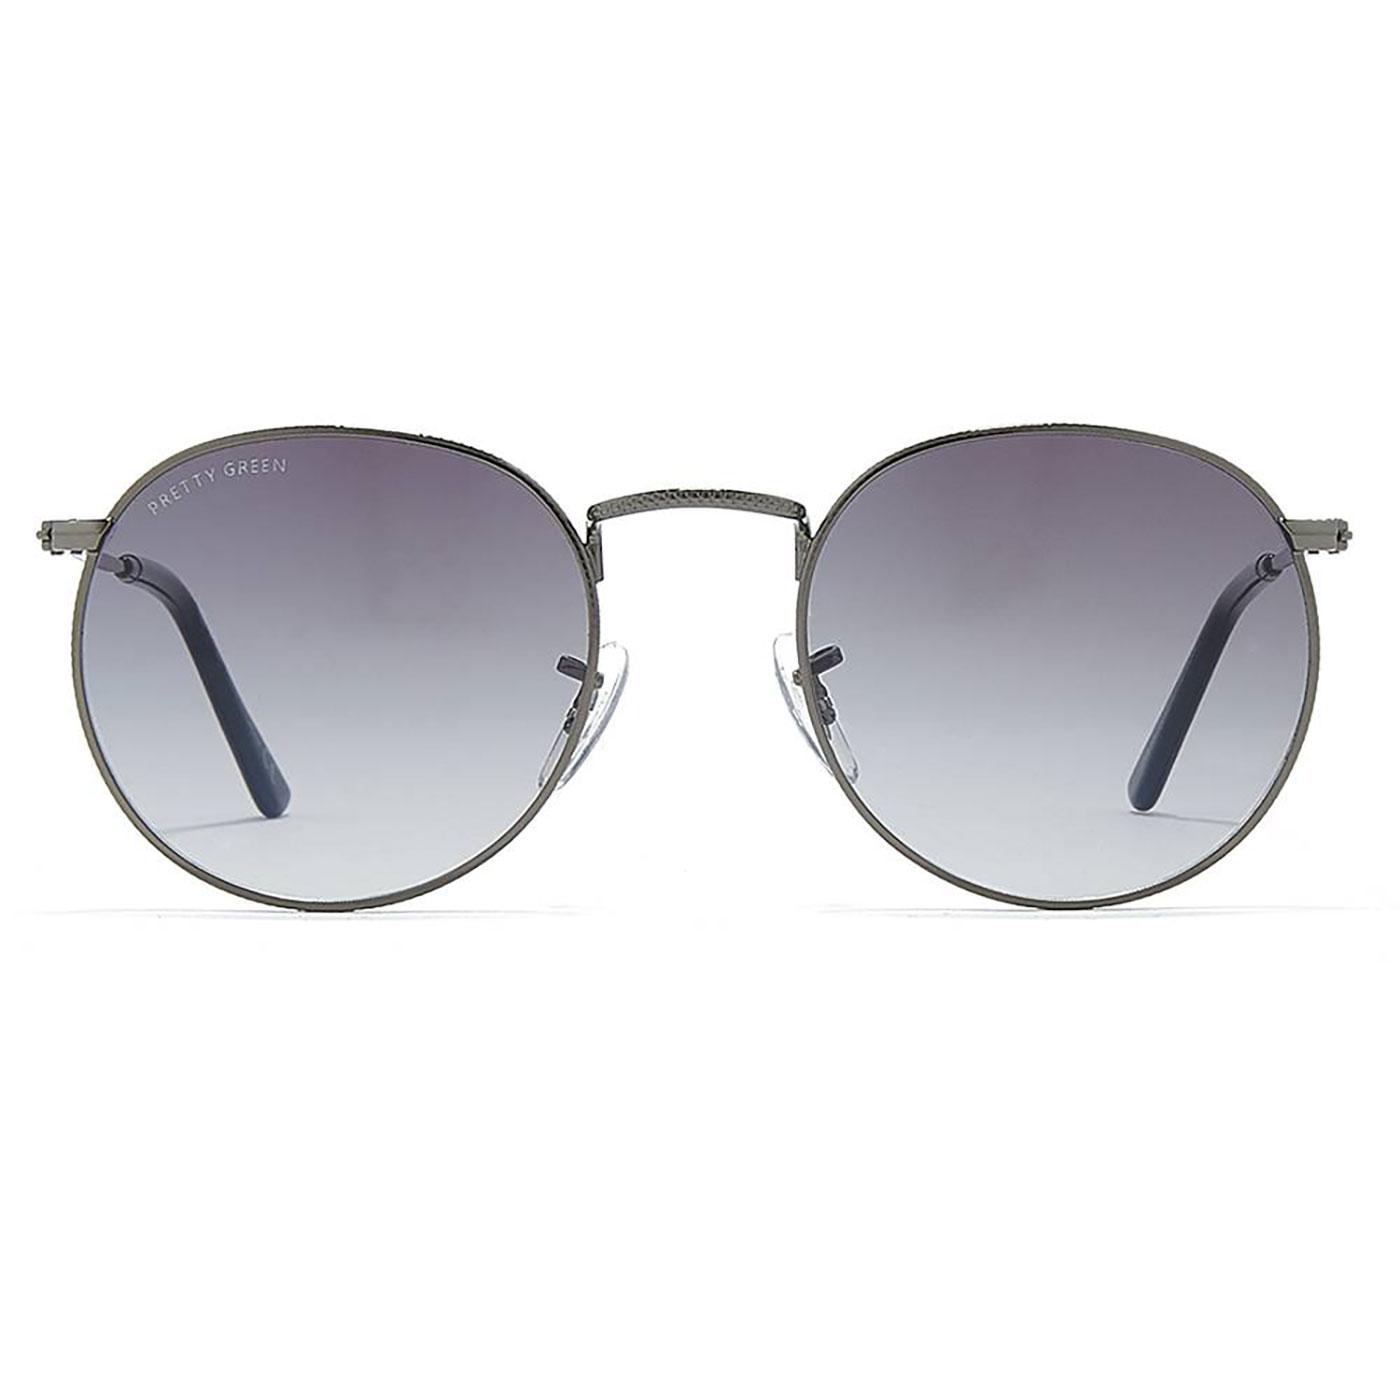 PRETTY GREEN Retro 60's Round Sunglasses GREY